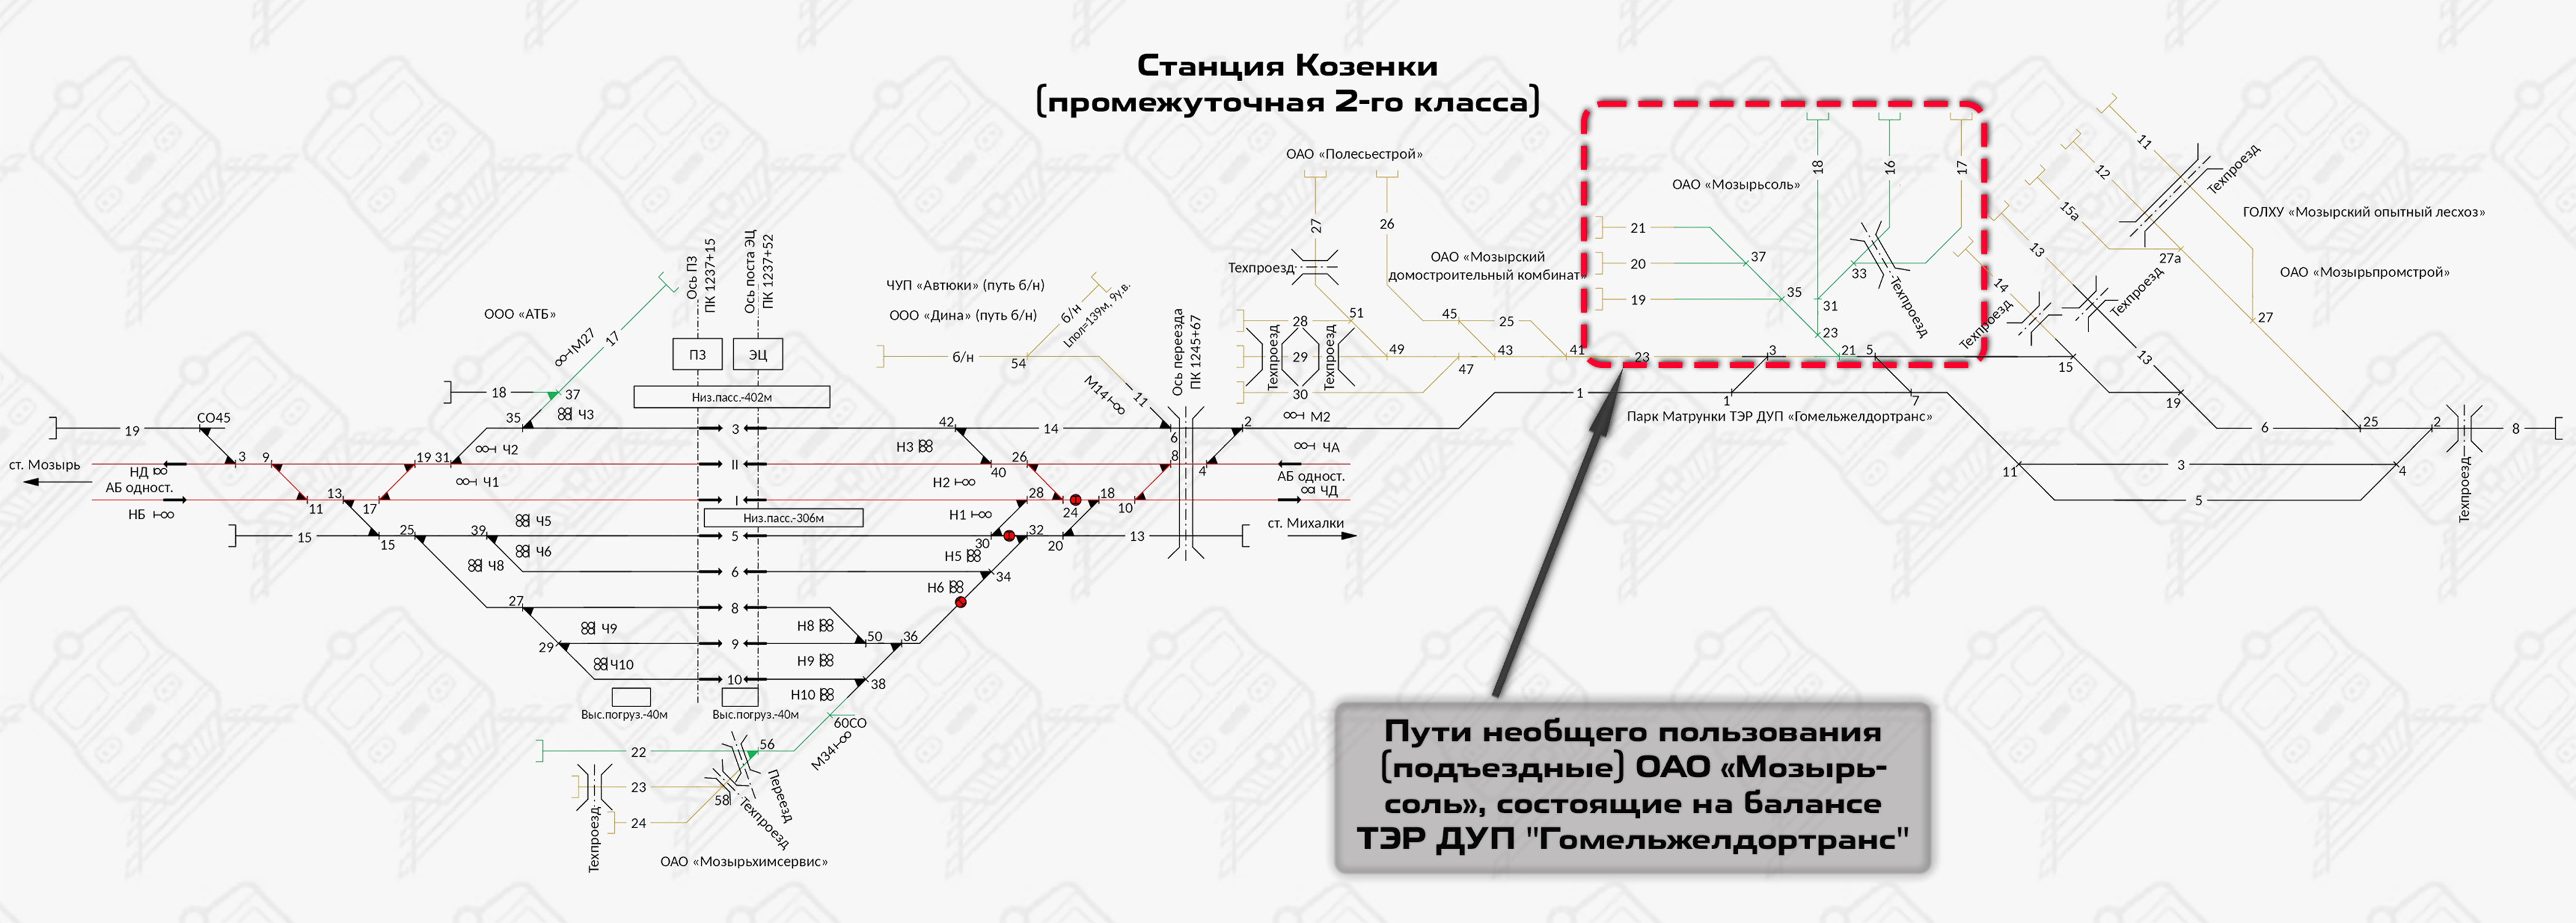 Общая схема станции Козенки (Гомельское отделение БЖД)